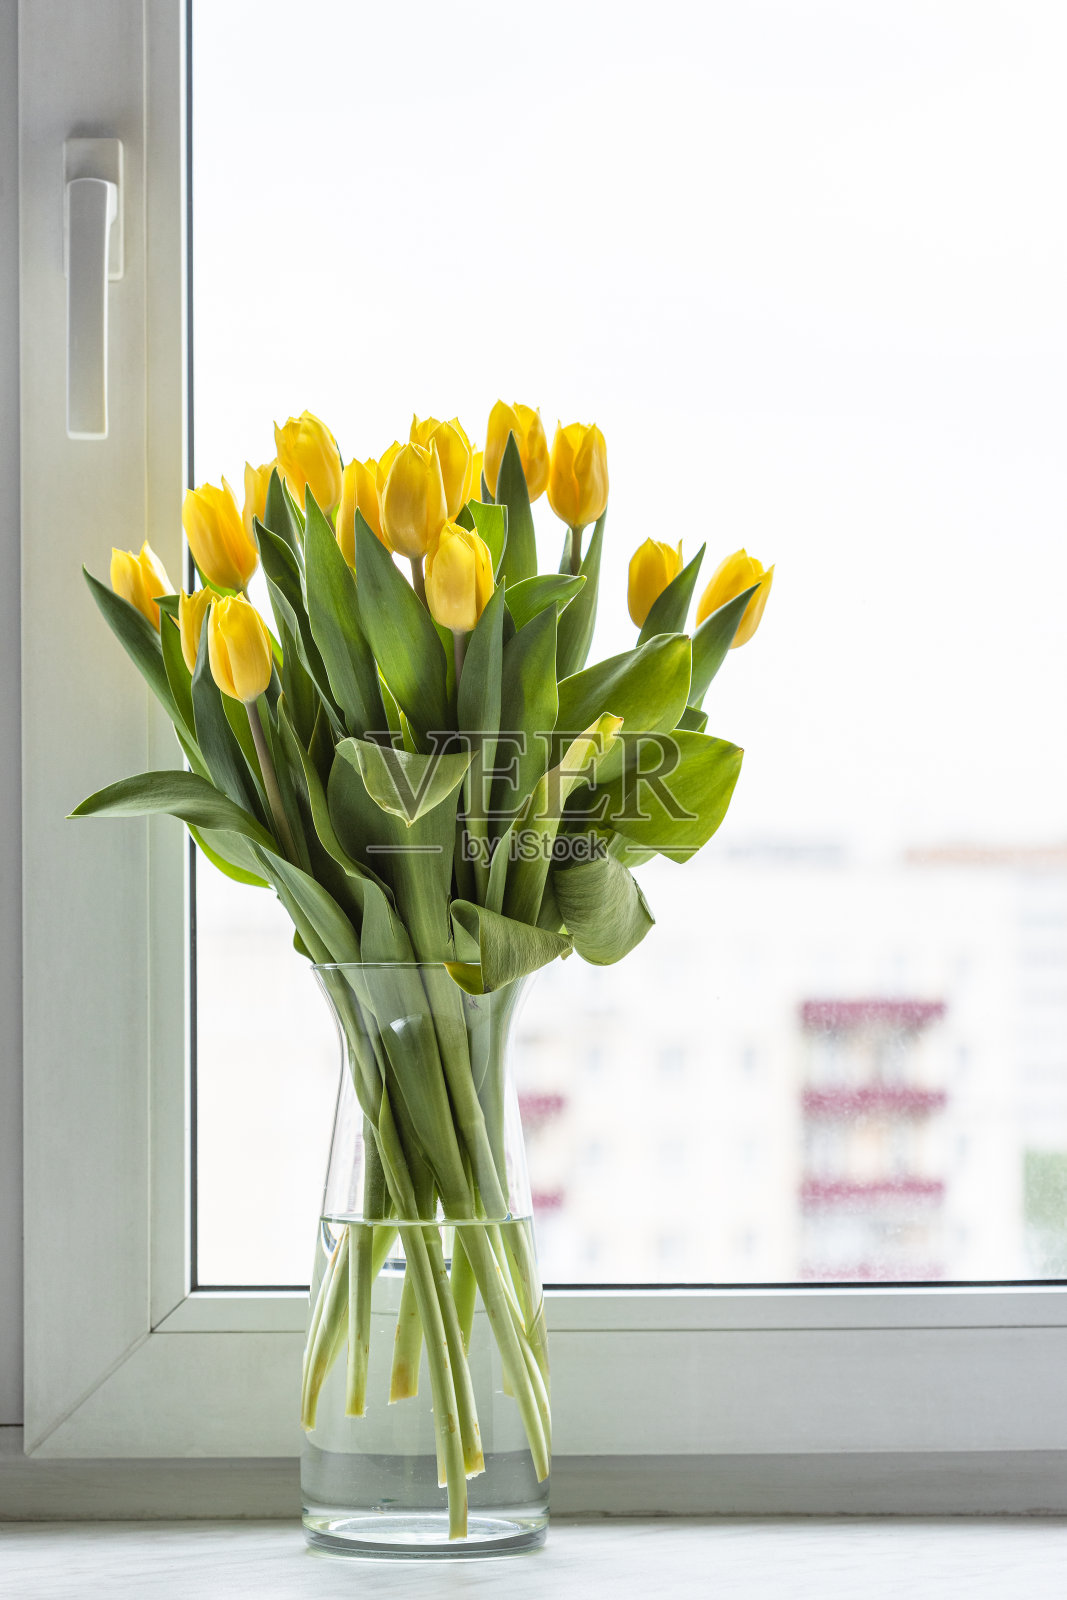 窗台玻璃花瓶里的黄色郁金香花照片摄影图片